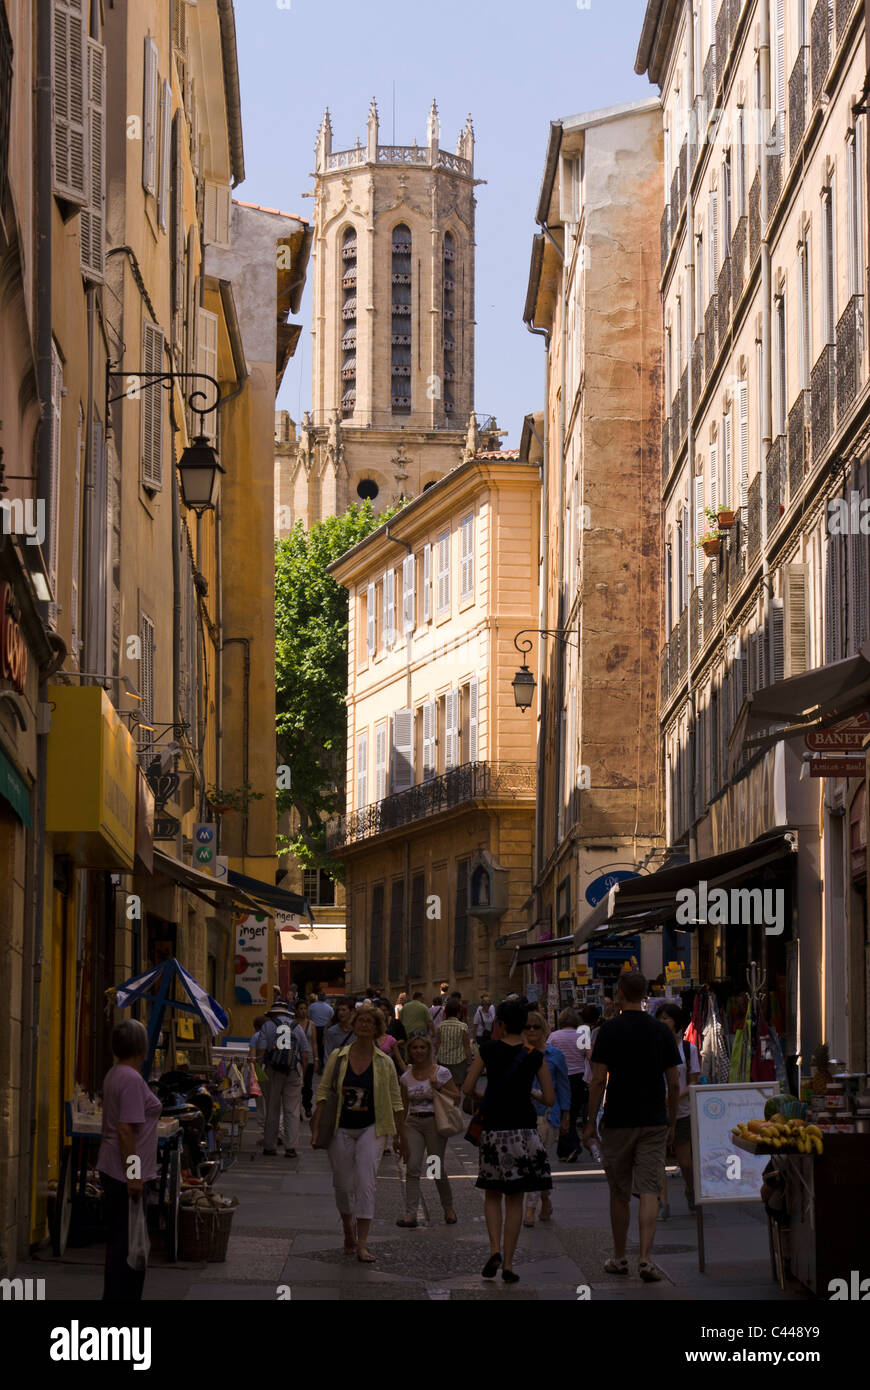 Rue Gaston de Saporta towards Cathédrale Saint-Sauveur. Aix-en-Provence, Bouches-du-Rhône, France. Stock Photo